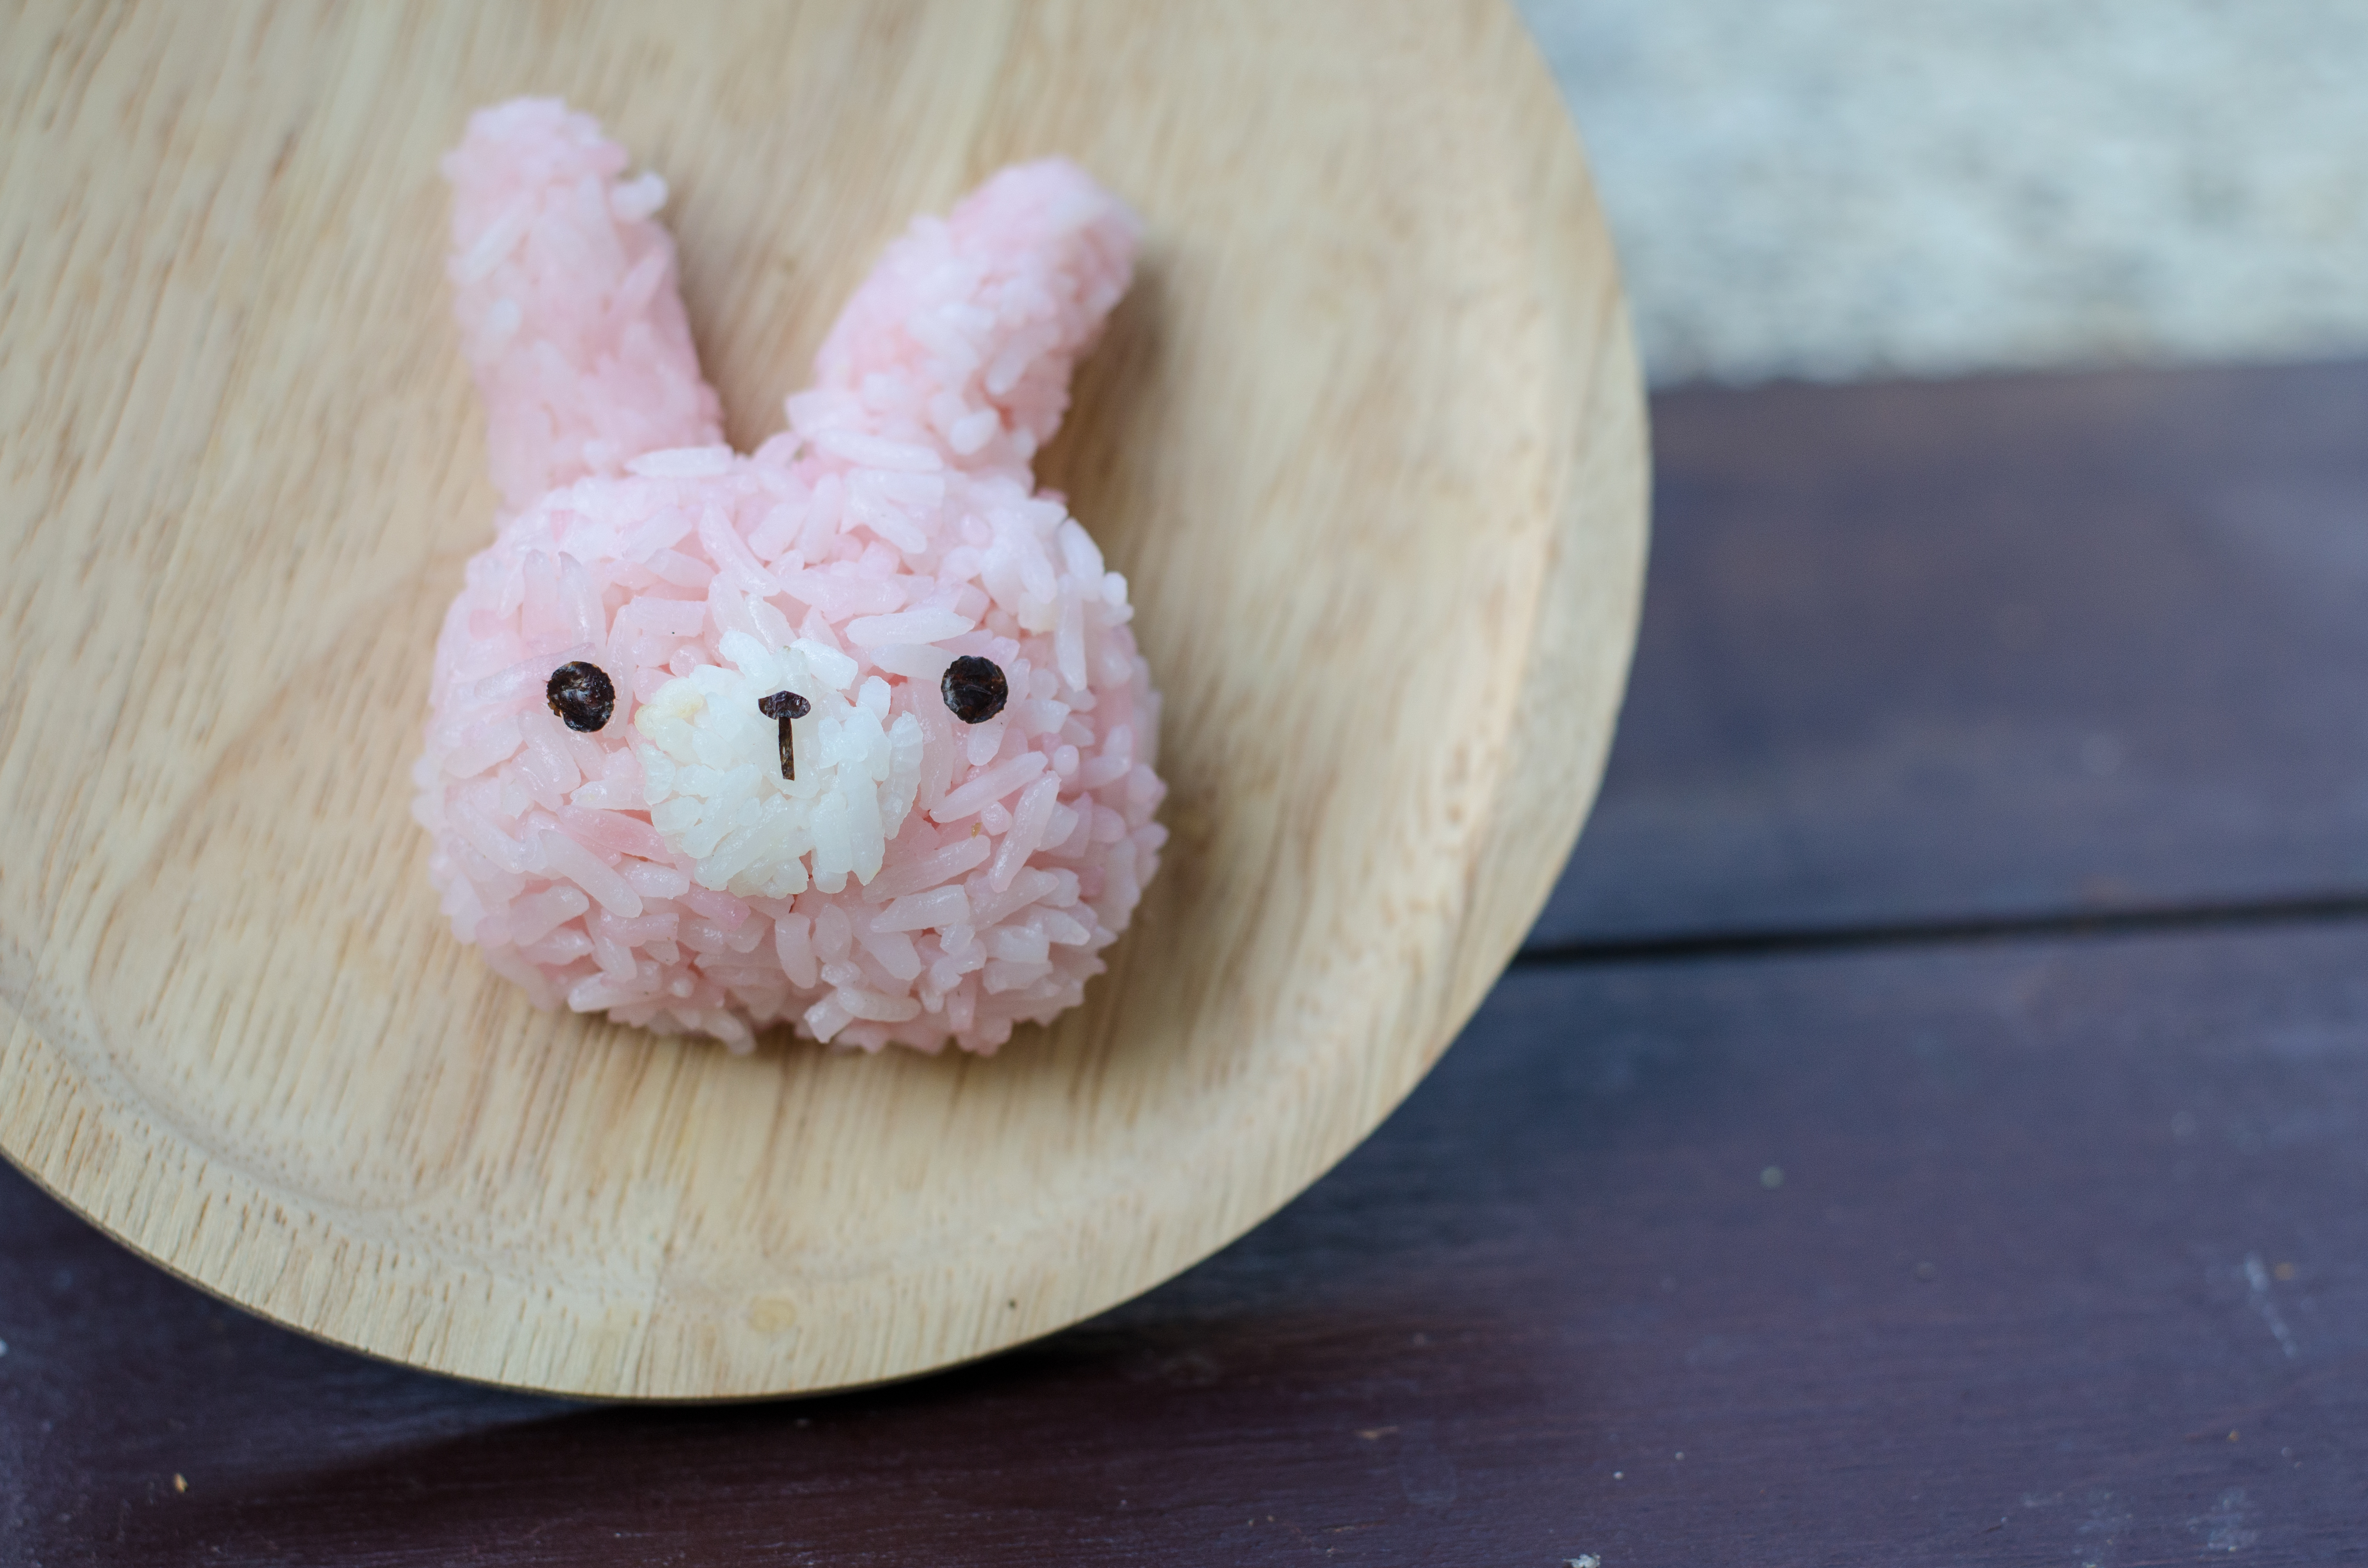 A rice ball is shaped like a cute bunny. Shutterstock image via user Mali Jasmine